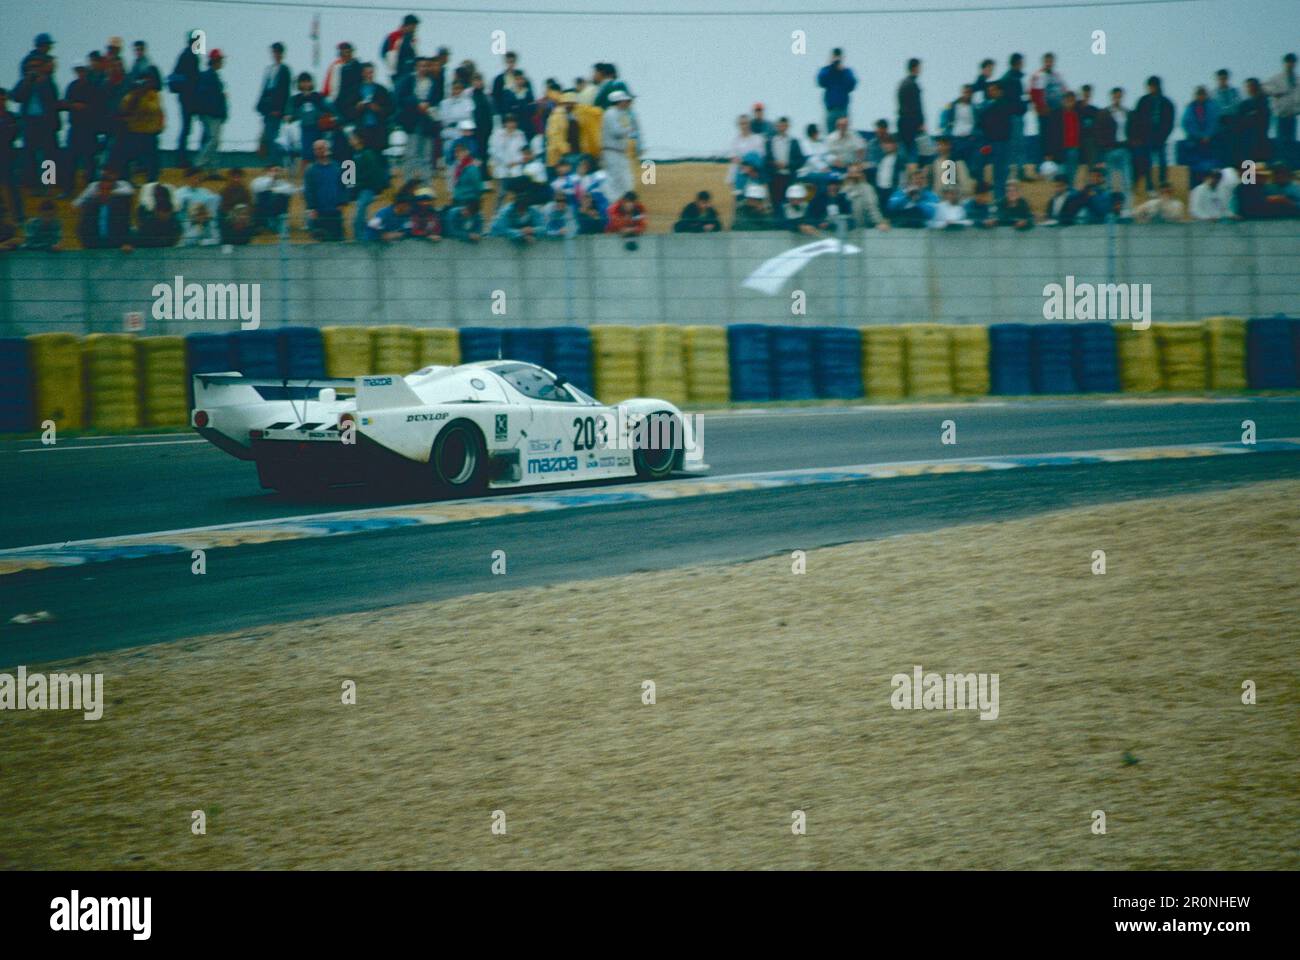 Coches de carreras deportivos: Mazda 757, Le Mans, Francia, 1988 Foto de stock